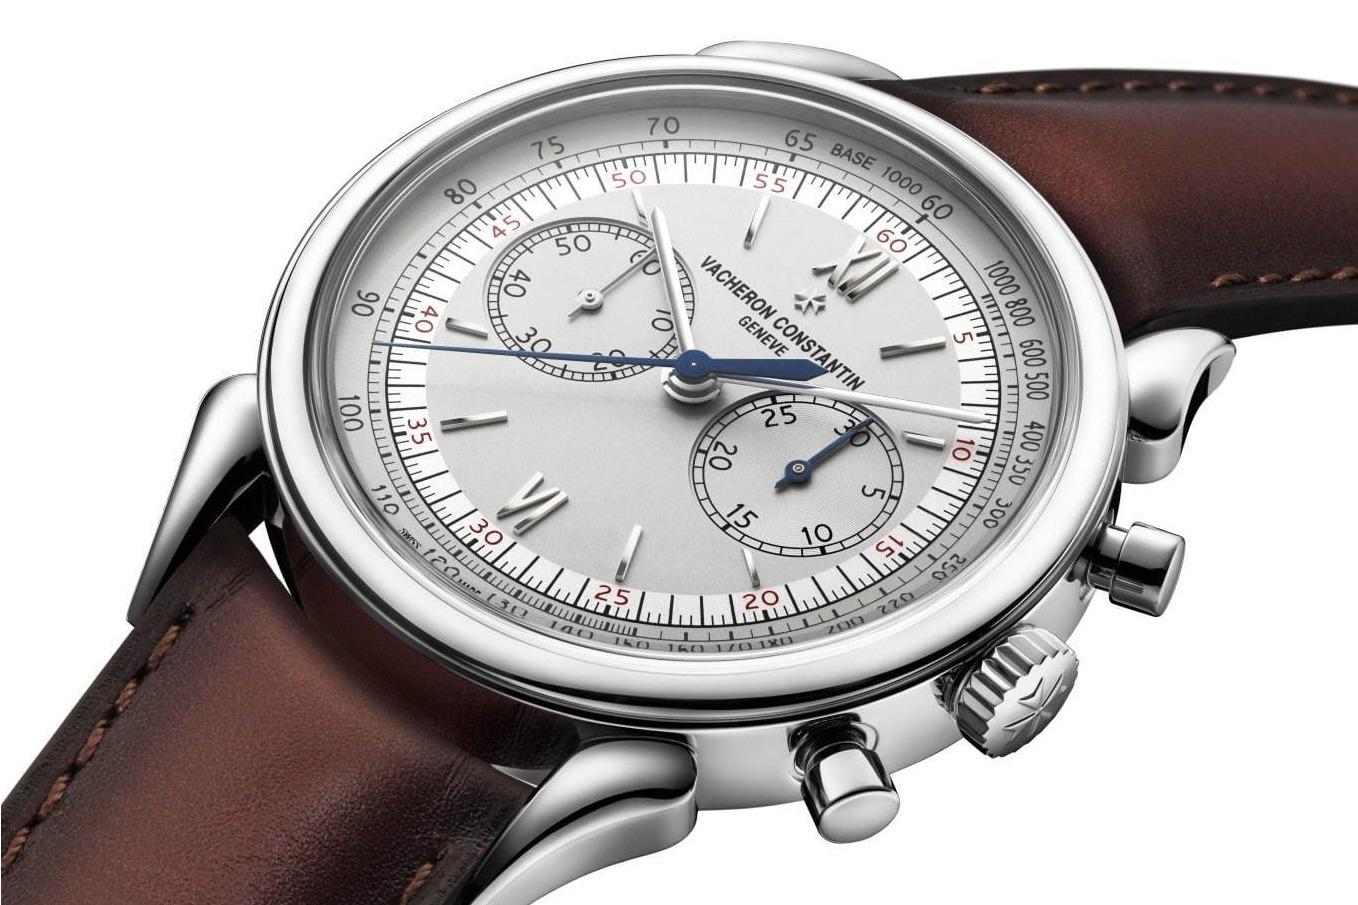 ヴァシュロン・コンスタンタンの新作腕時計、1955年誕生のブランド初防水クロノグラフをリモデル 